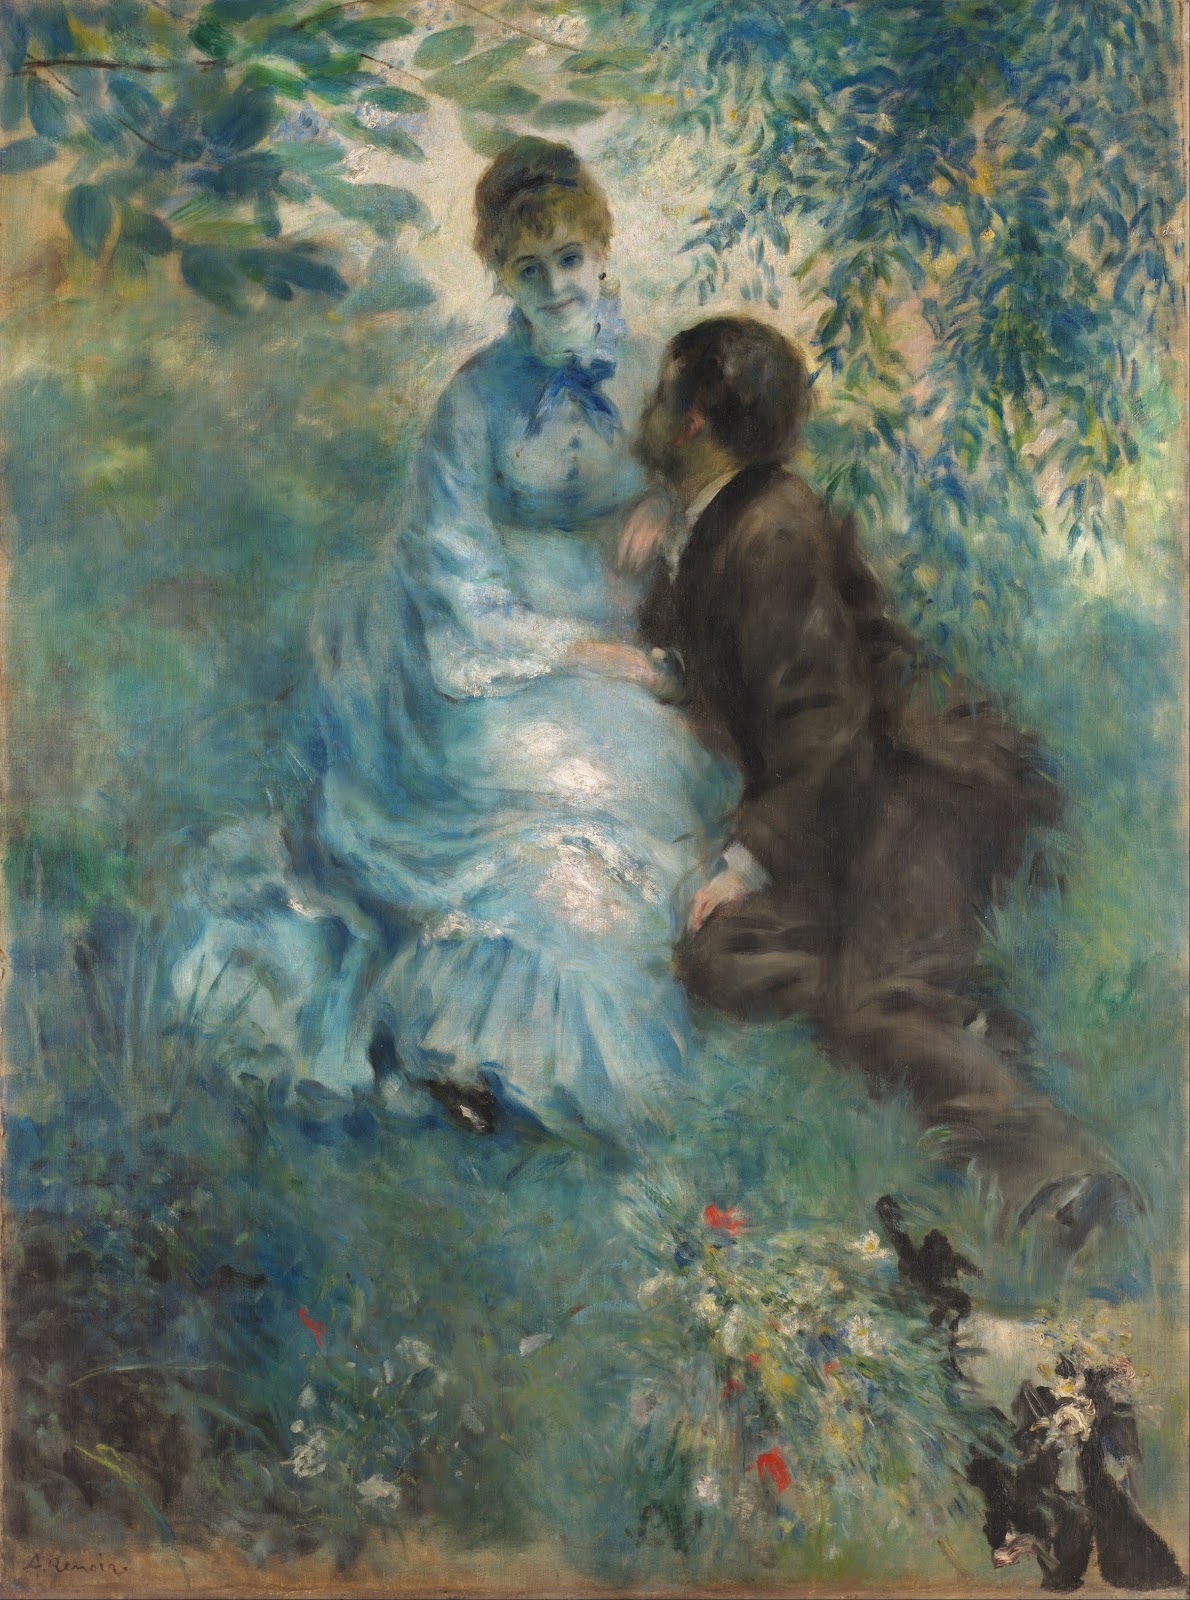 Pierre+Auguste+Renoir-1841-1-19 (670).jpg